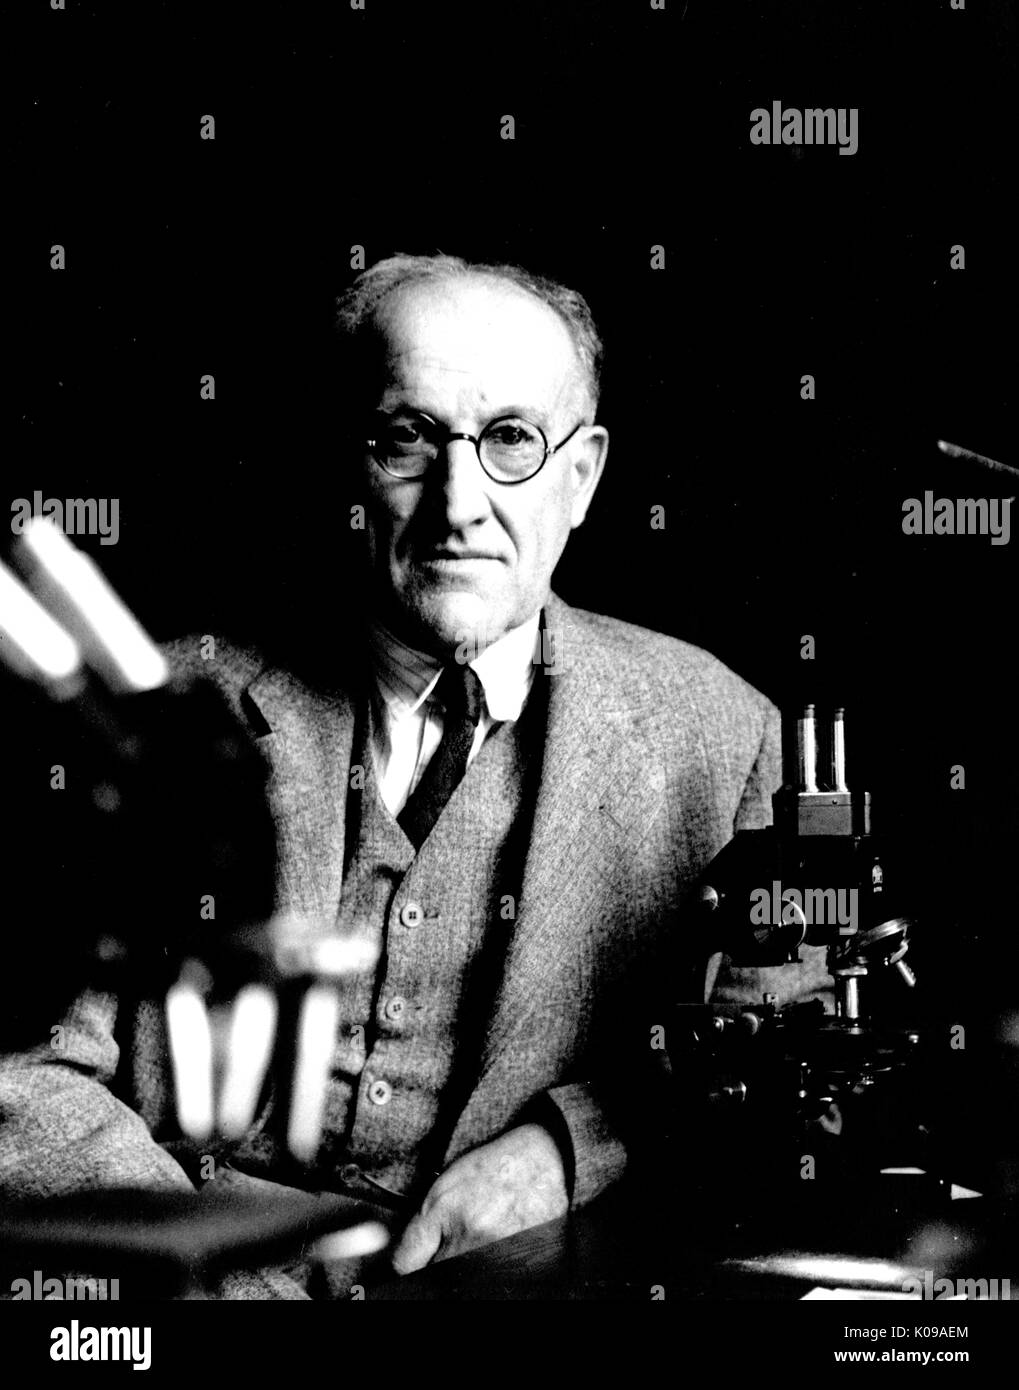 Halbe Länge Foto von Dr. Samuel Mast, Biologie Mitglied der Fakultät an der Johns Hopkins Universität, hinter einem Schreibtisch aus Holz, trug einen dunklen Anzug und drei Stück runder Brille, ein Mikroskop und andere Instrumente auf dem Tisch vor ihm, mit einem ernsten Gesichtsausdruck. 1937. Stockfoto